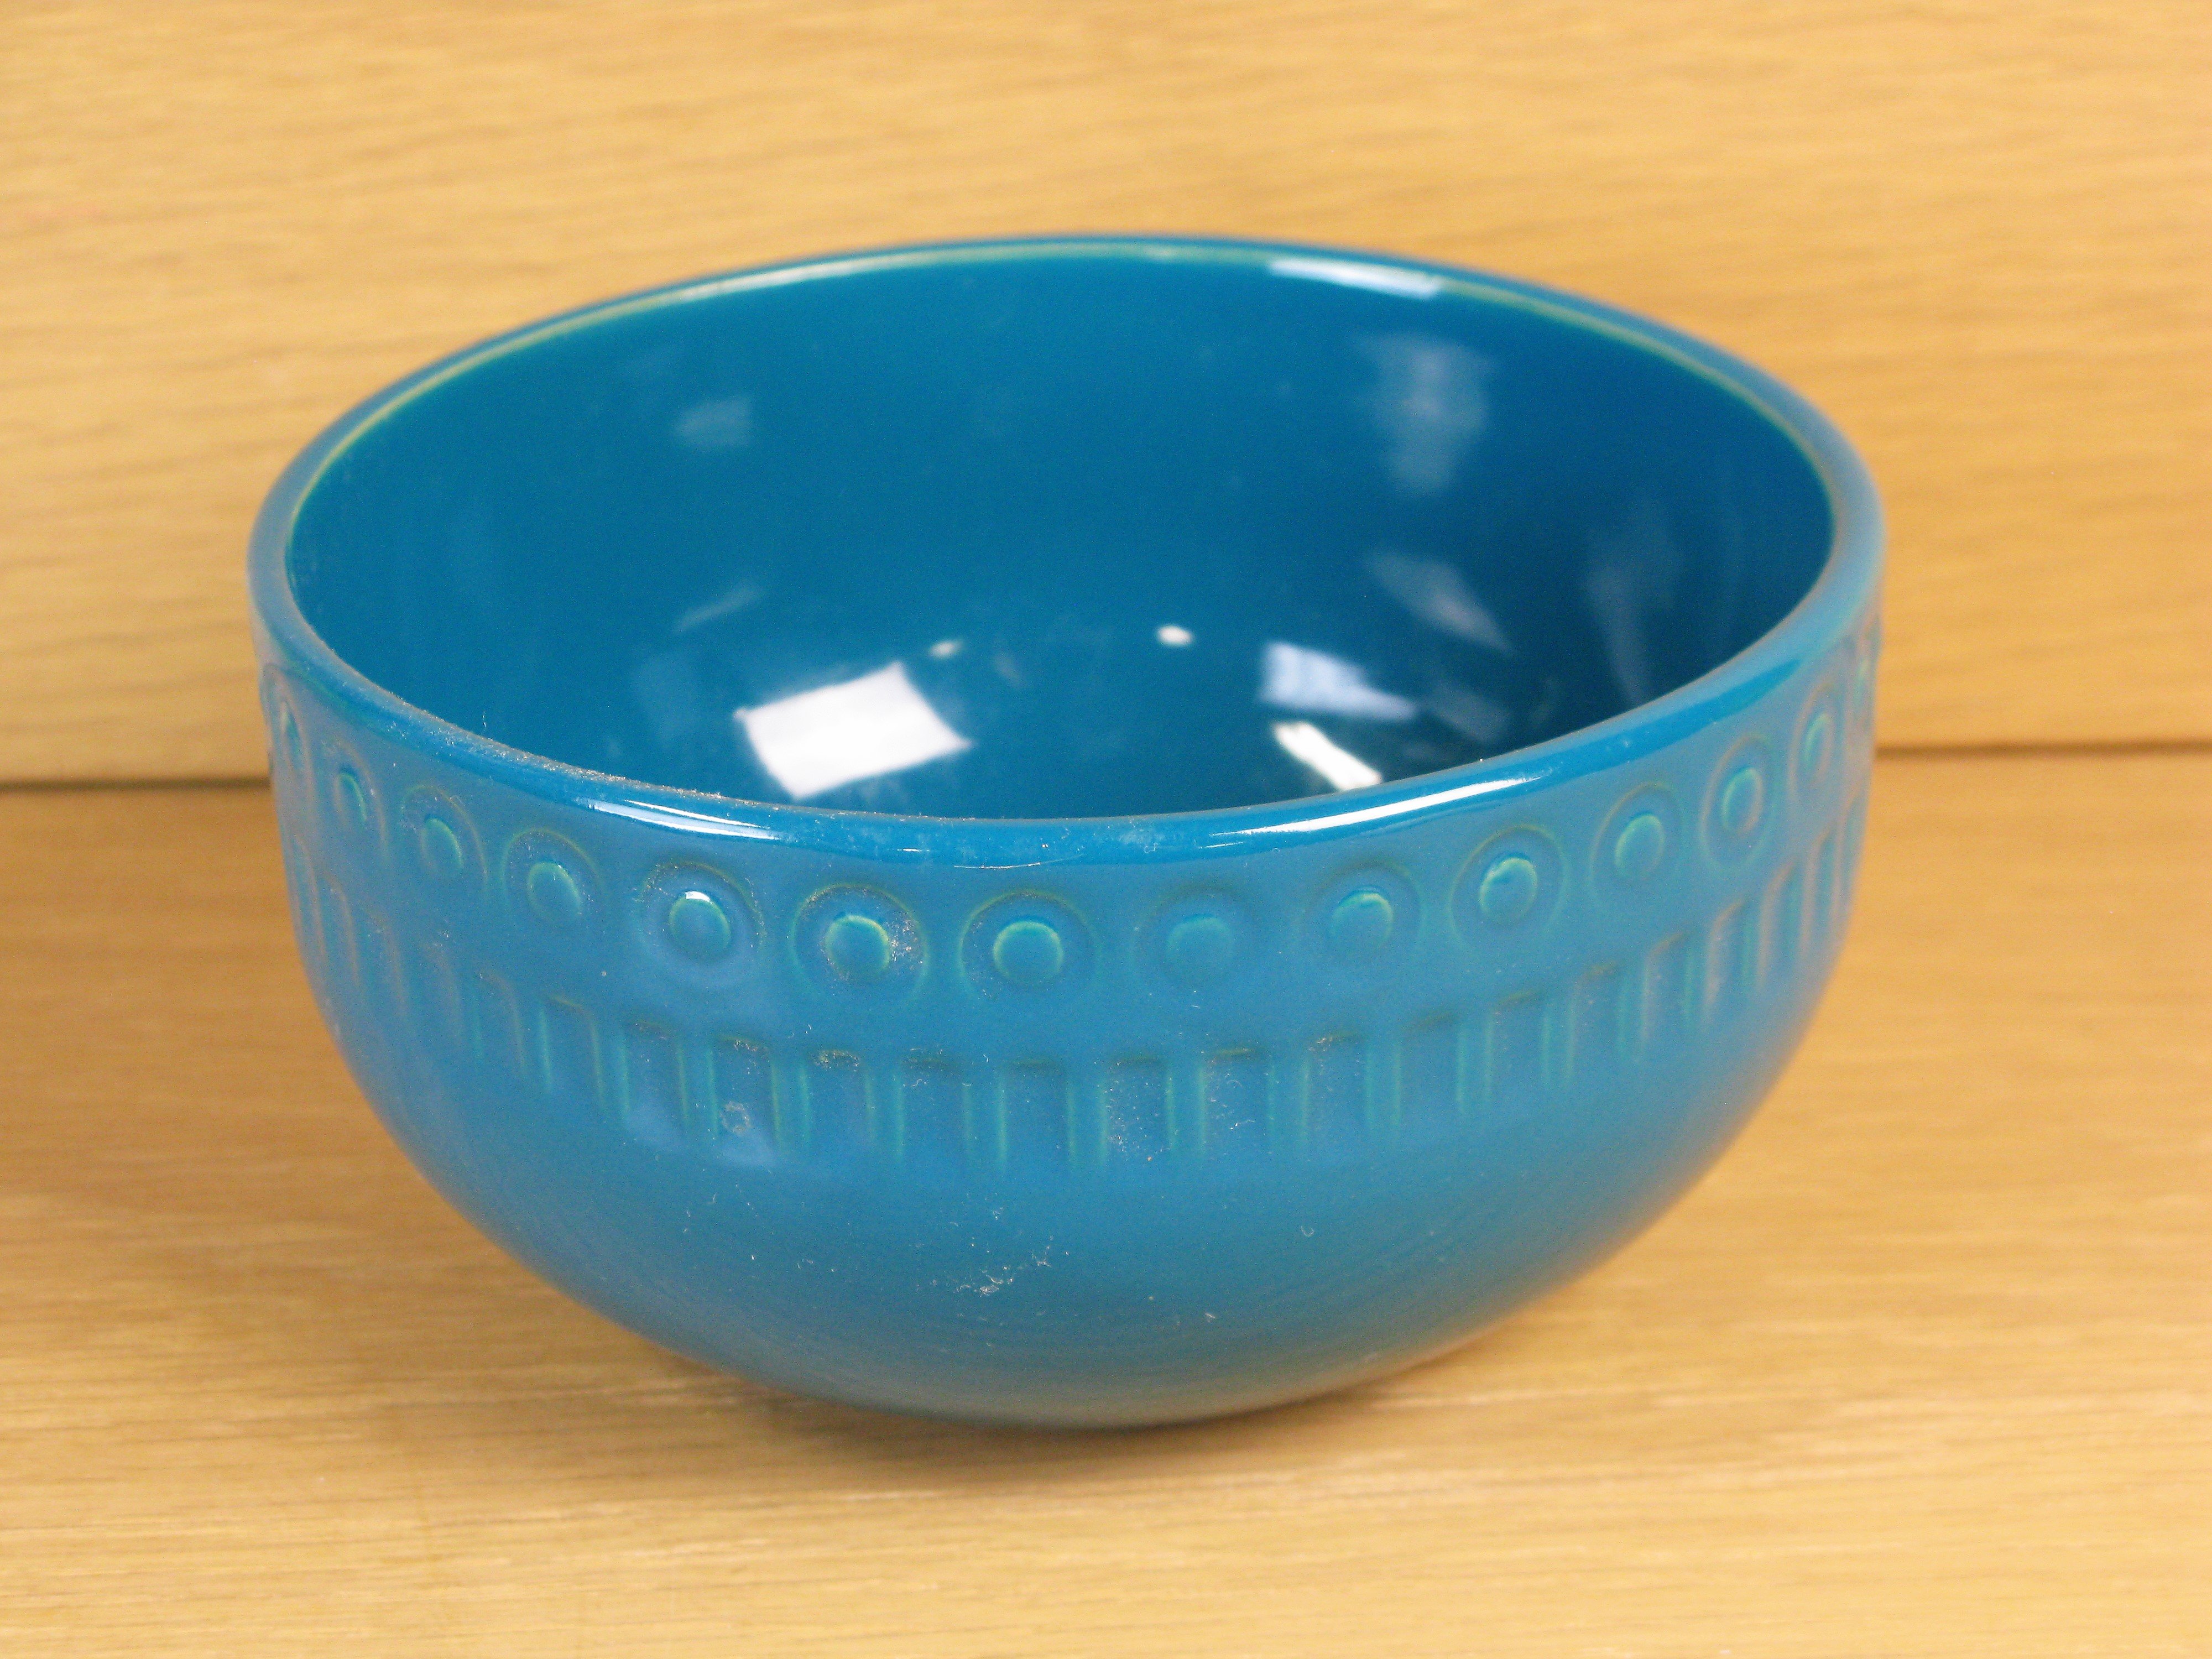 aros bowl 8041m